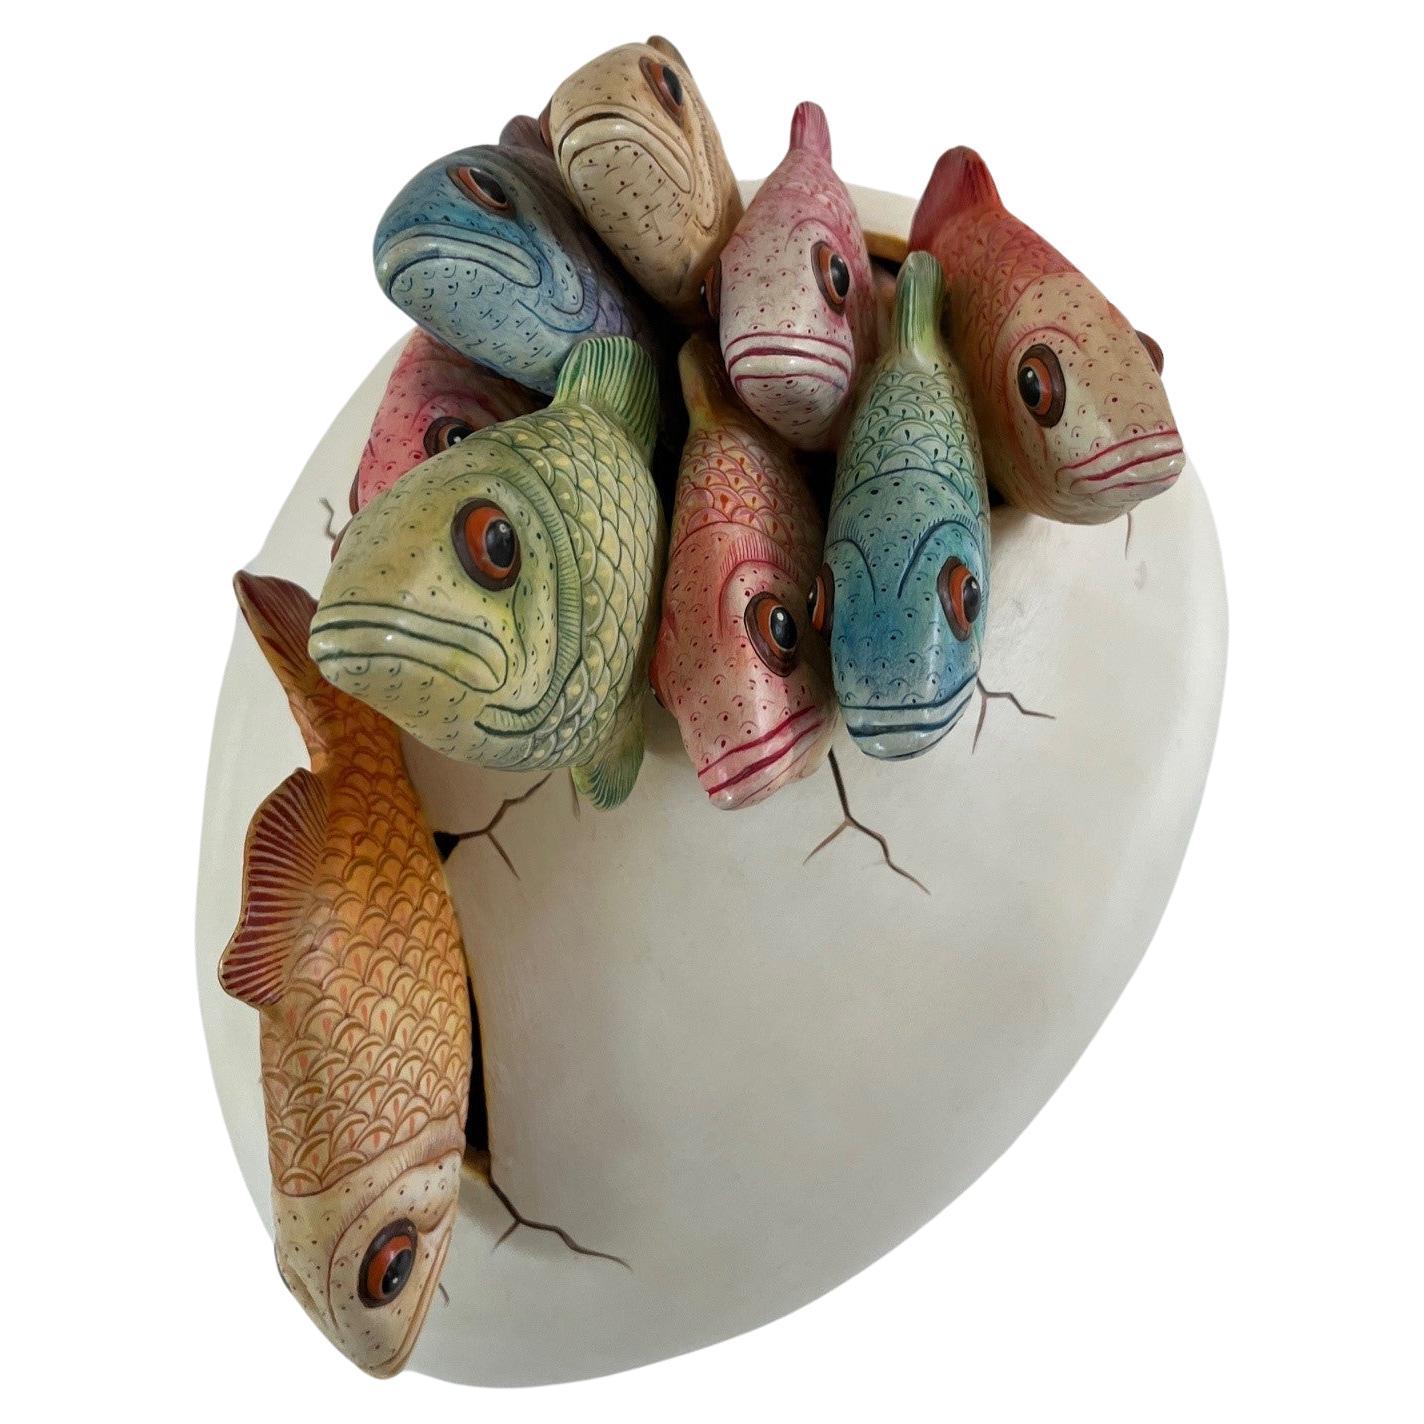 Grande sculpture vintage d'œuf de poisson en train d'éclore, neuf figures de poissons colorés sortant d'un œuf avec des CIRCA, par l'artiste Sergio Bustamente, circa : 1950s. 